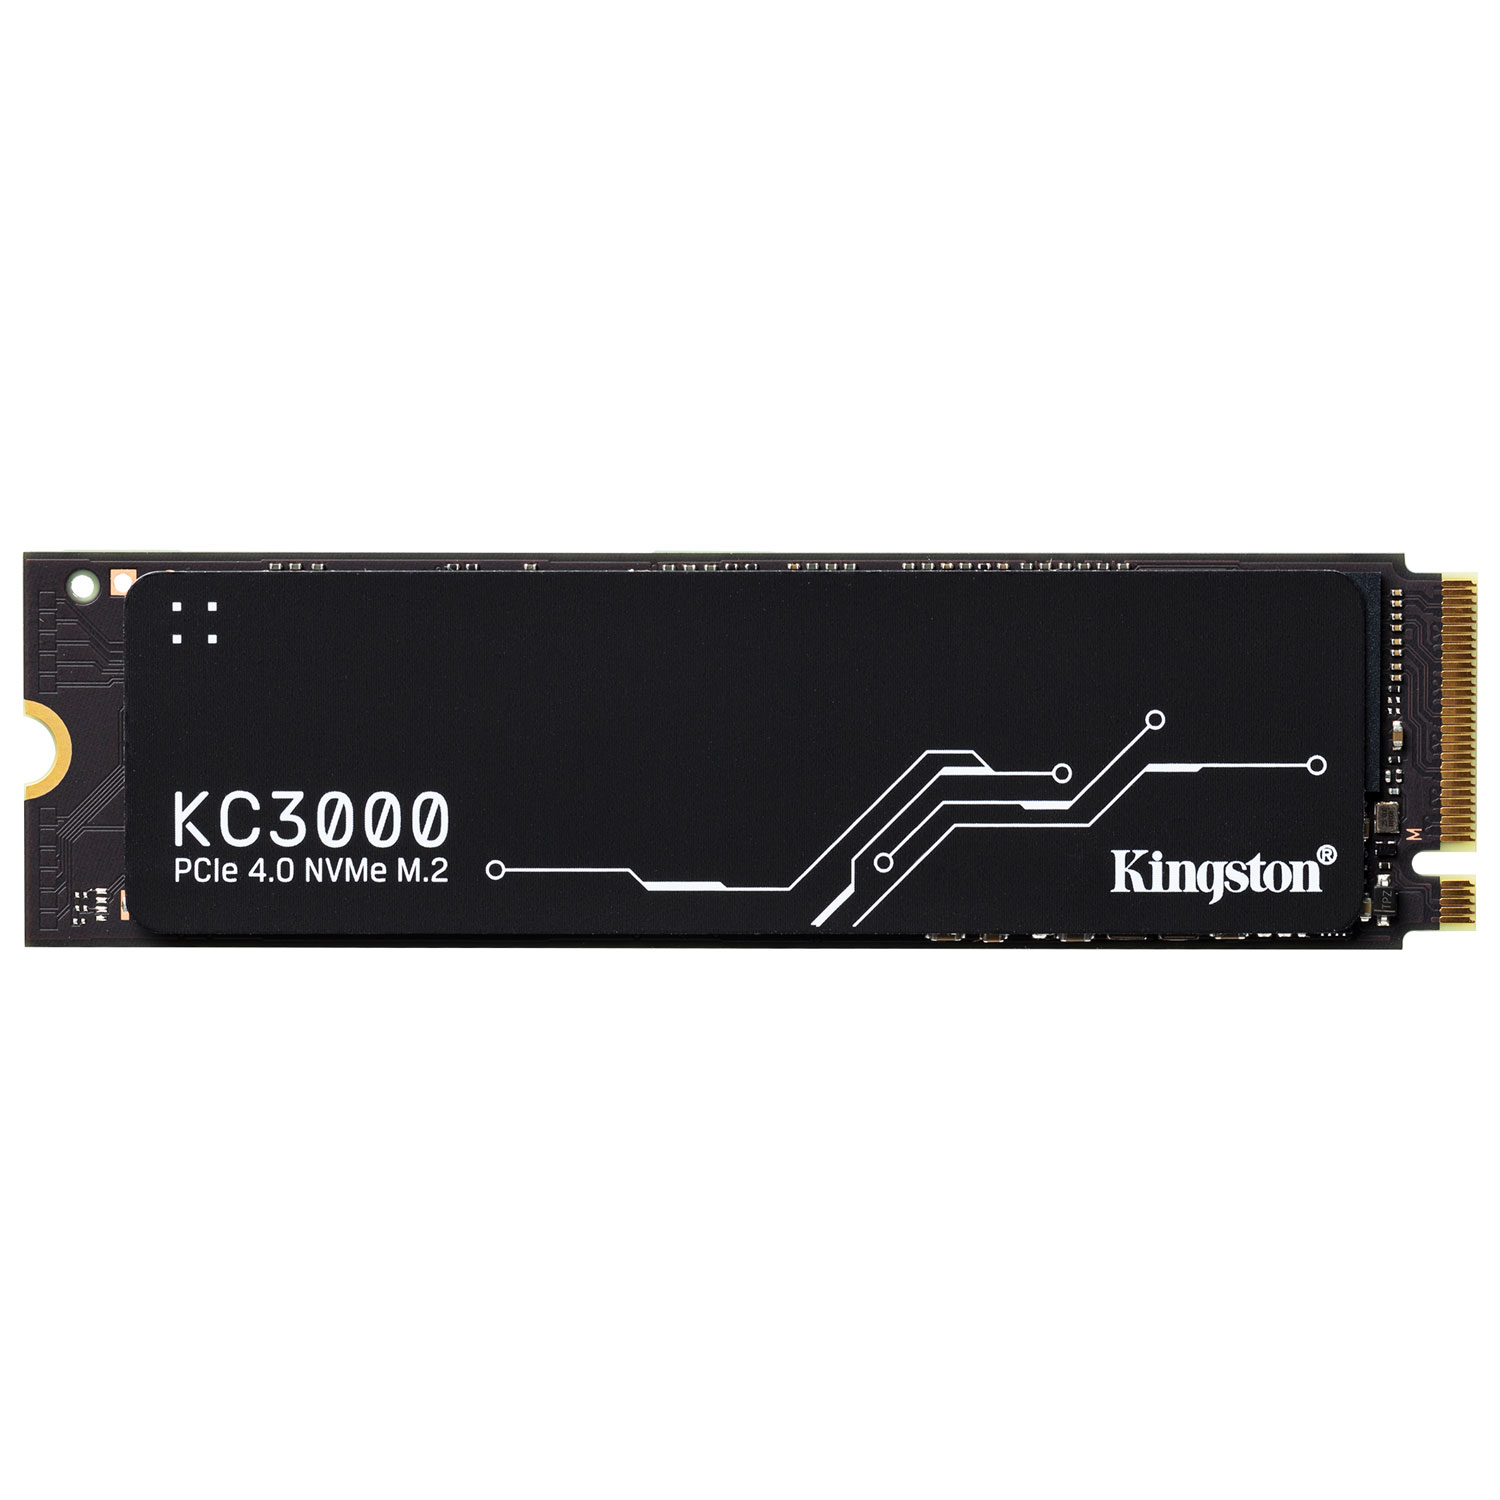 Kingston KC3000 512GB NVMe PCI-e Internal Solid State Drive